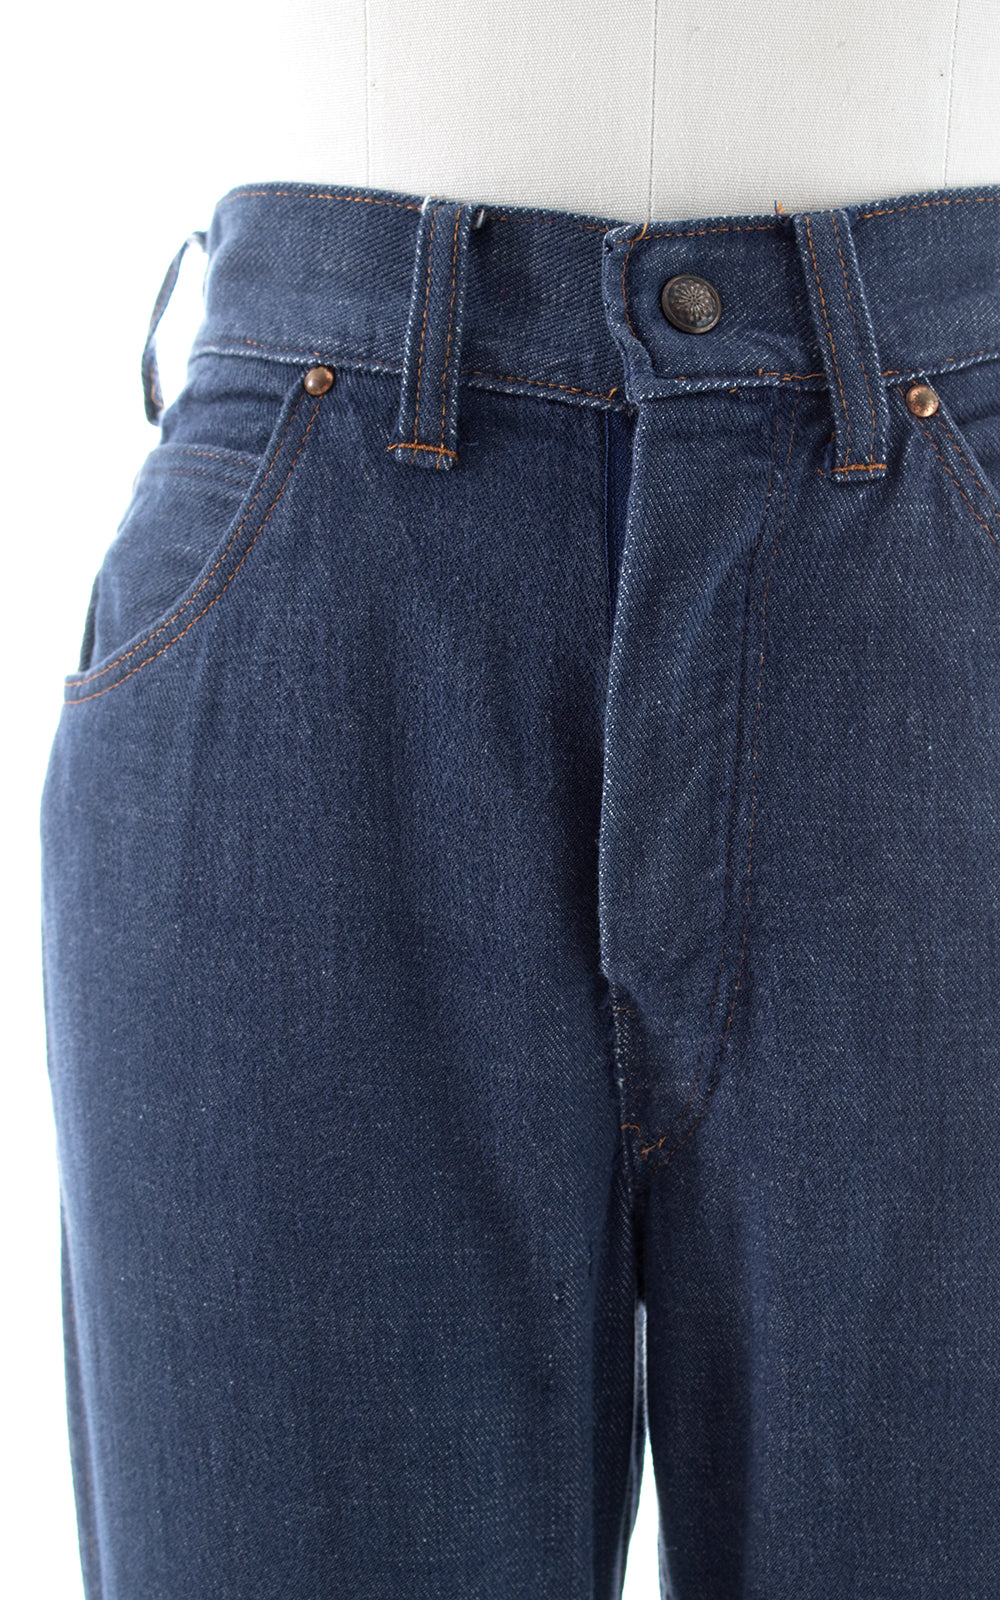 1970s Denim Bell Bottom Jeans